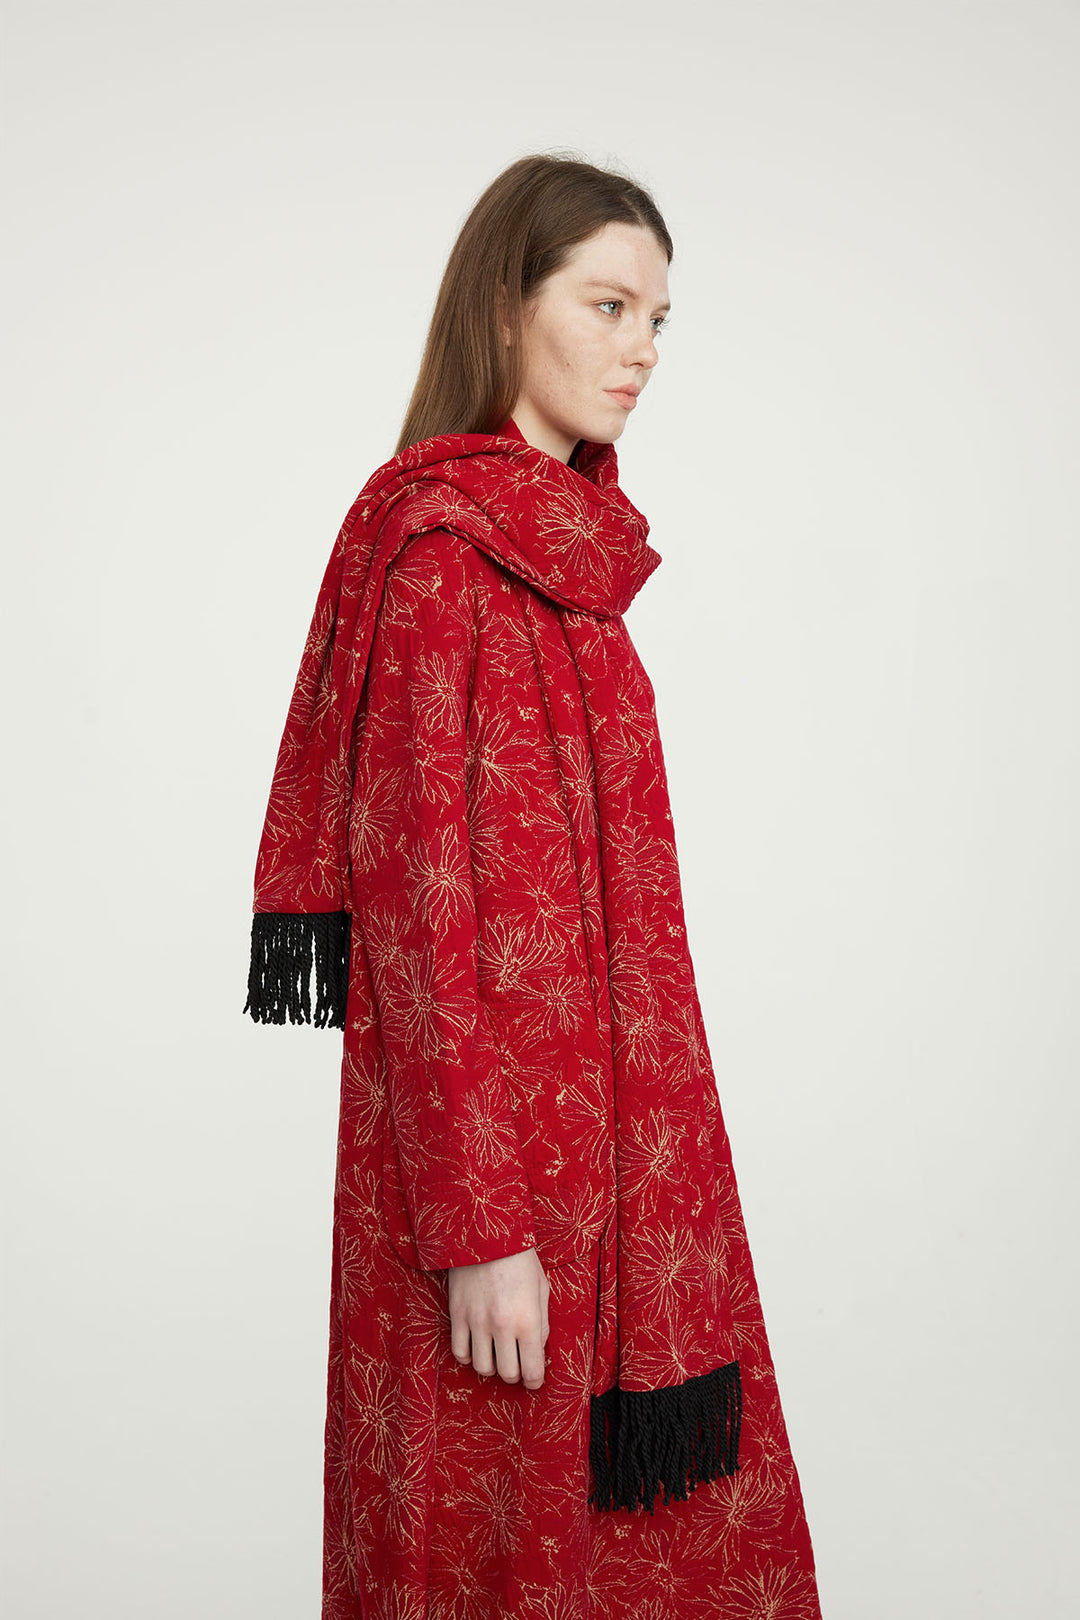 Vestido casual bordado rojo con bufanda